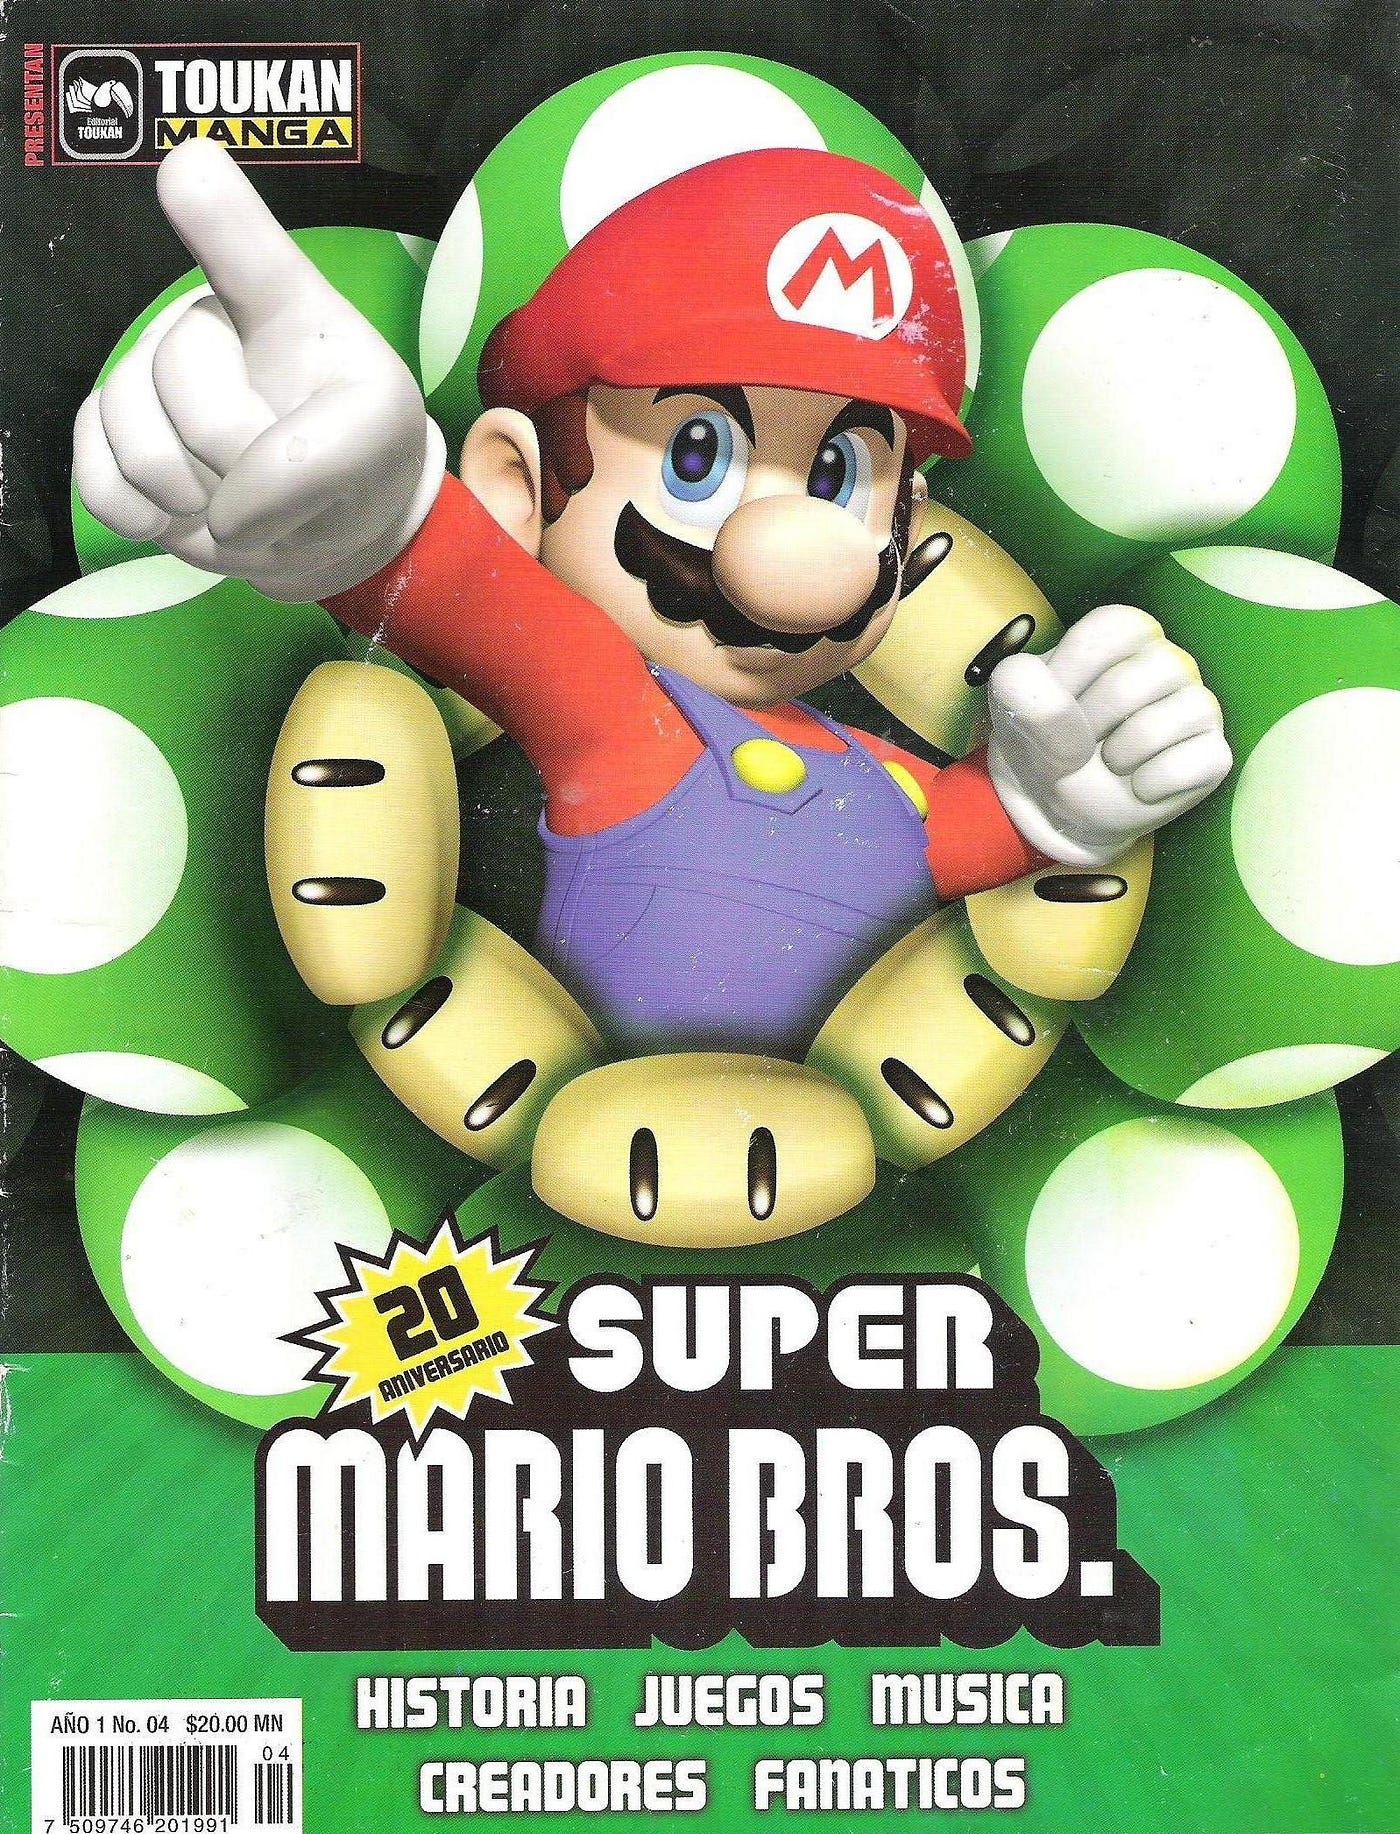 Shigeru Miyamoto, creador de Super Mario Bros, afirma que el único